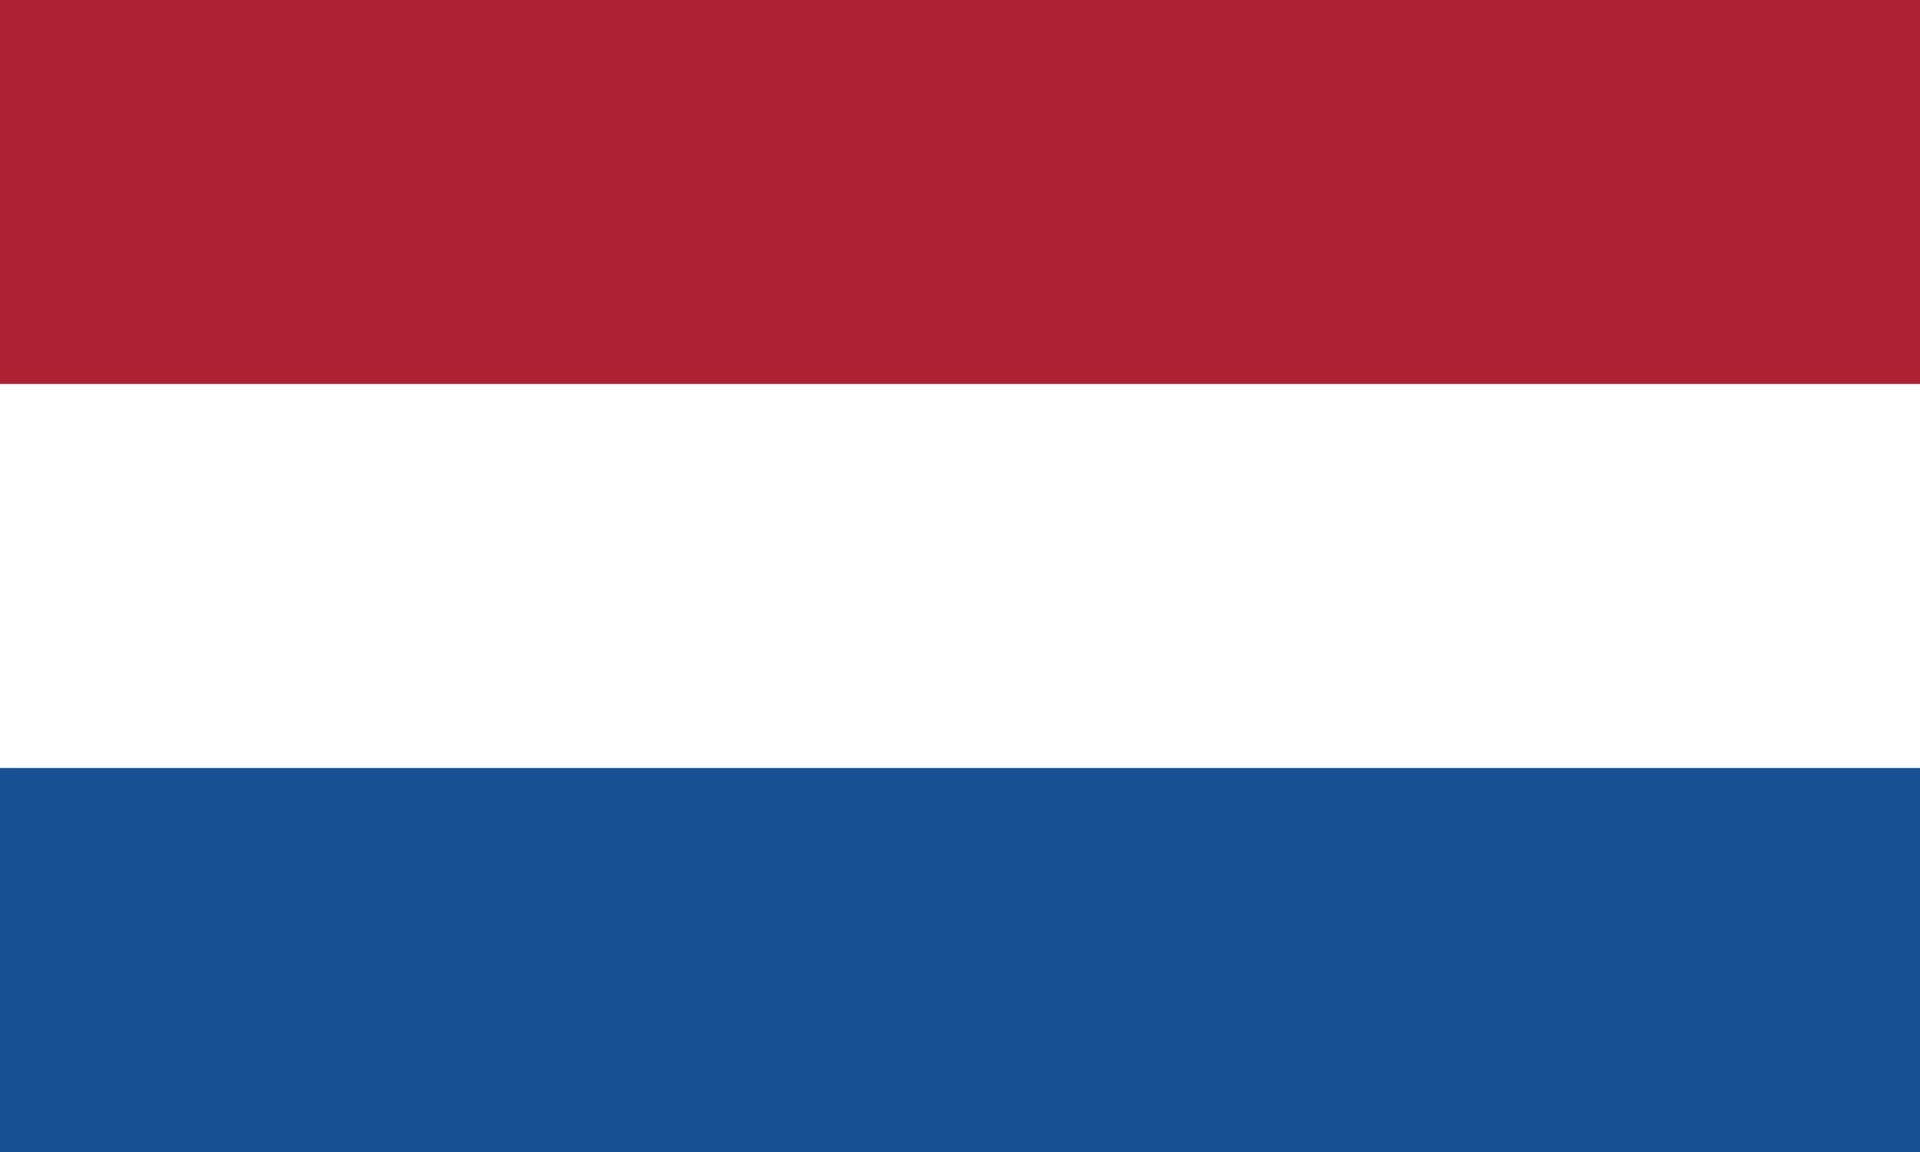 नीदरलैंड का झंडा